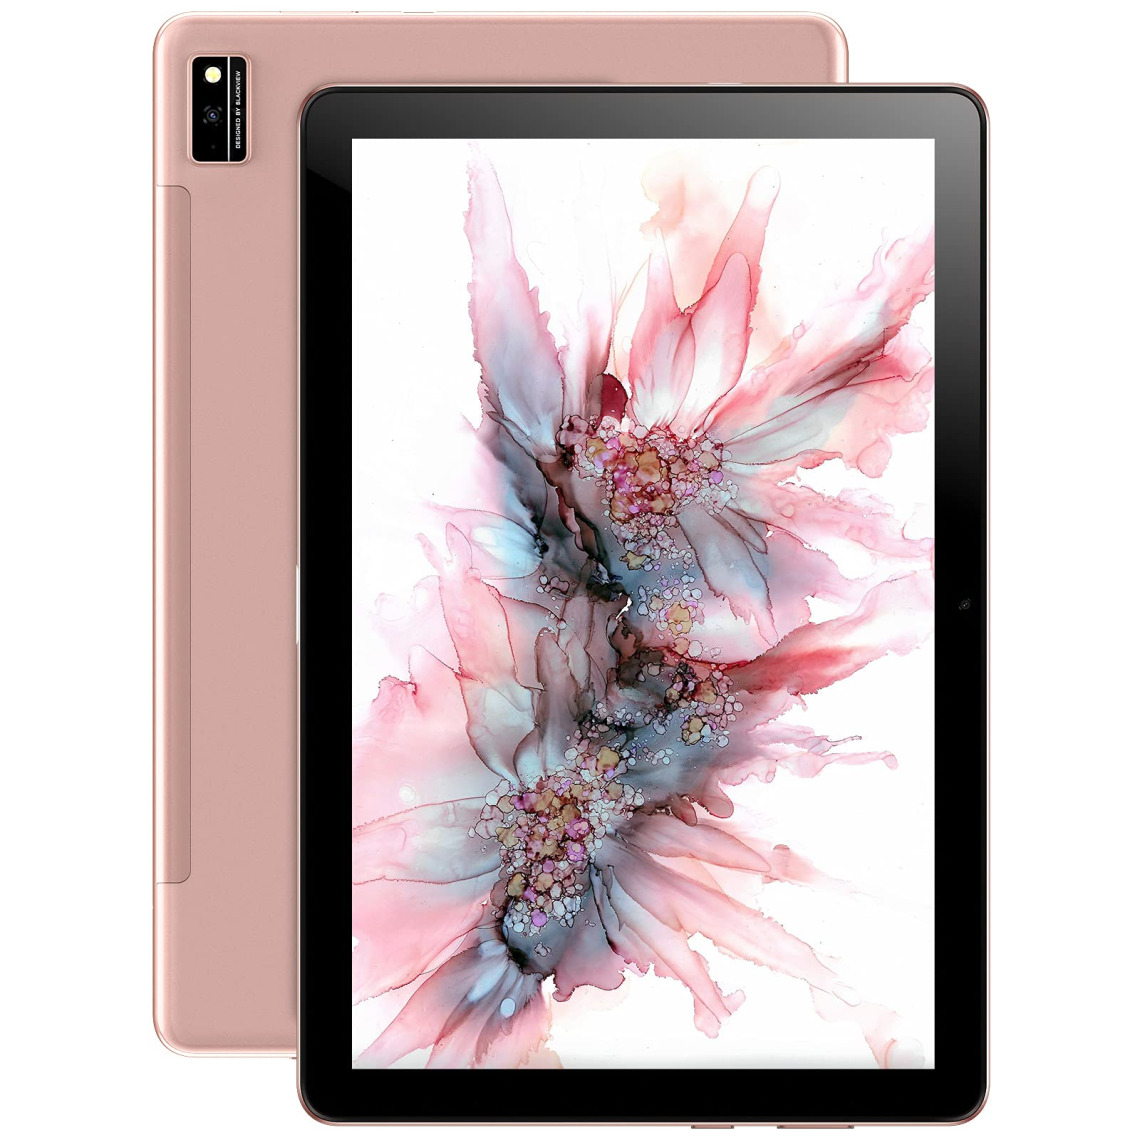 Blackview - BlackviewTab10 Tablette Dual 4G LTE+5G WiFi Tablette 4Go+64Go Rose - Tablette Android